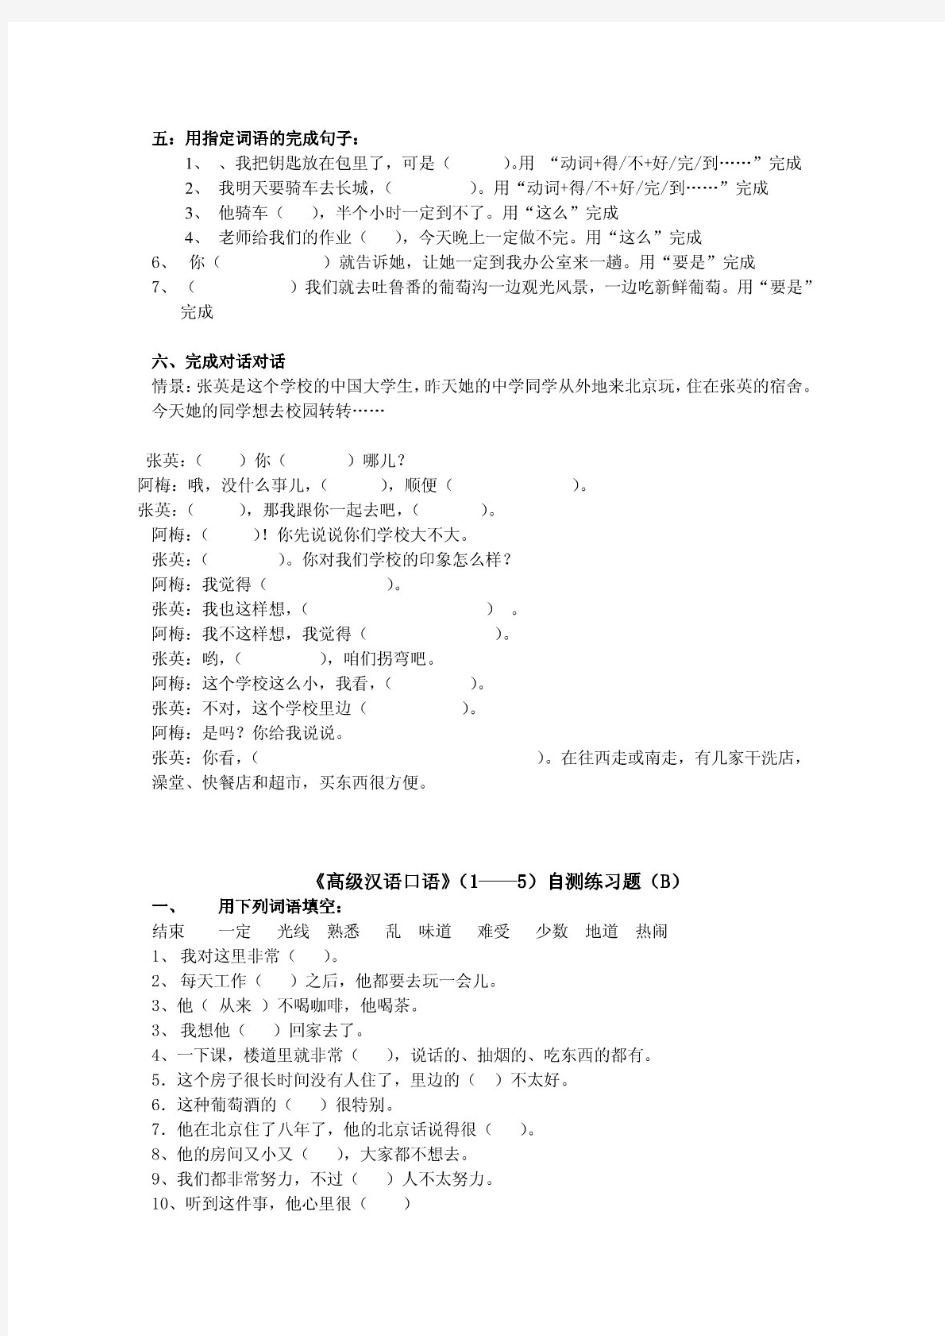 《高级汉语口语》(1——5)自测题